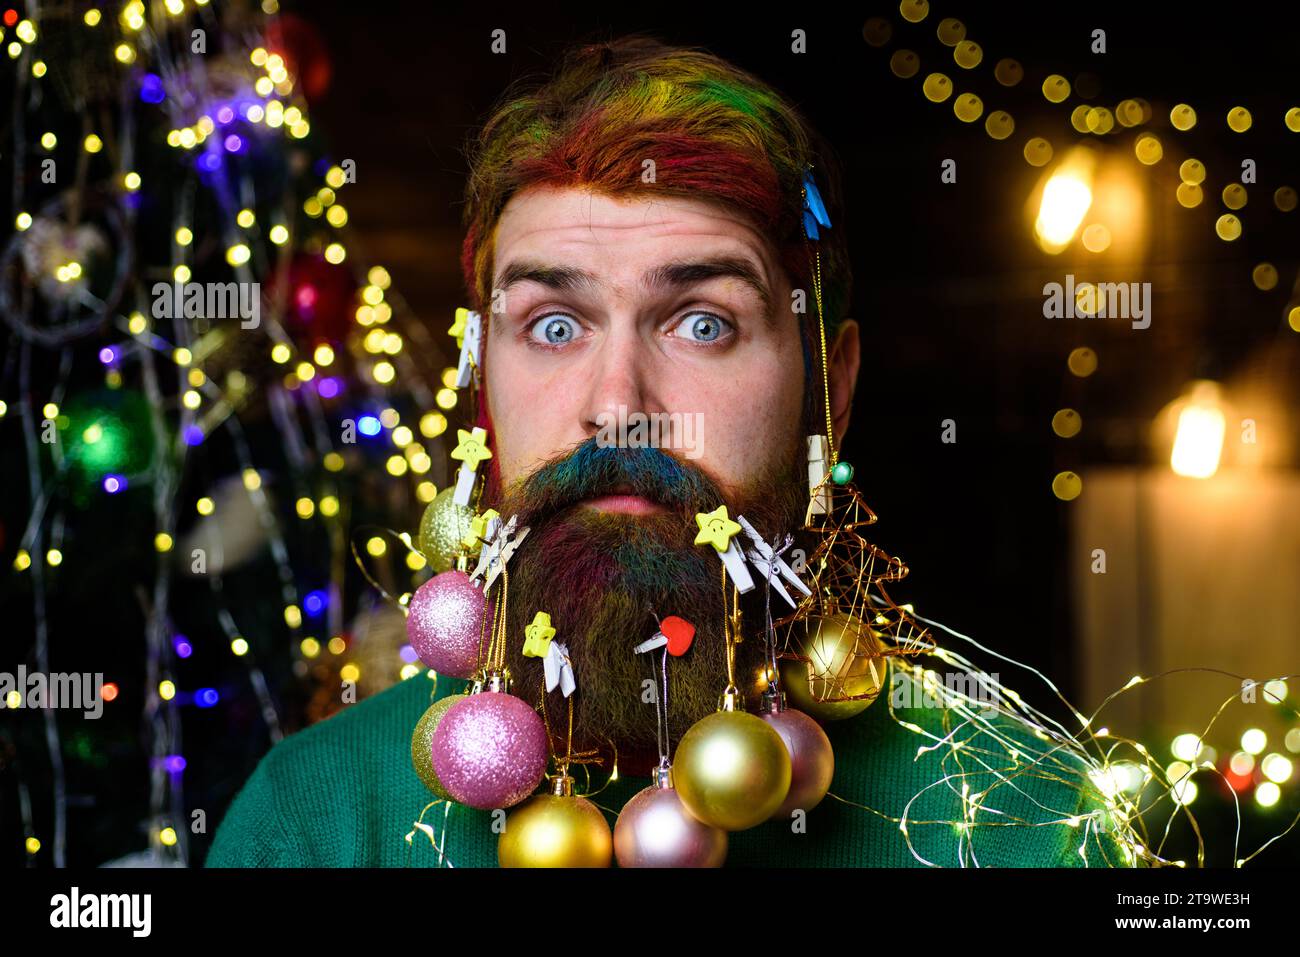 Publicité pour salon de coiffure de Noël. Gars barbu avec barbe décorée prêt pour Noël ou fête du nouvel an. Homme surpris avec les cheveux colorés et la barbe Banque D'Images